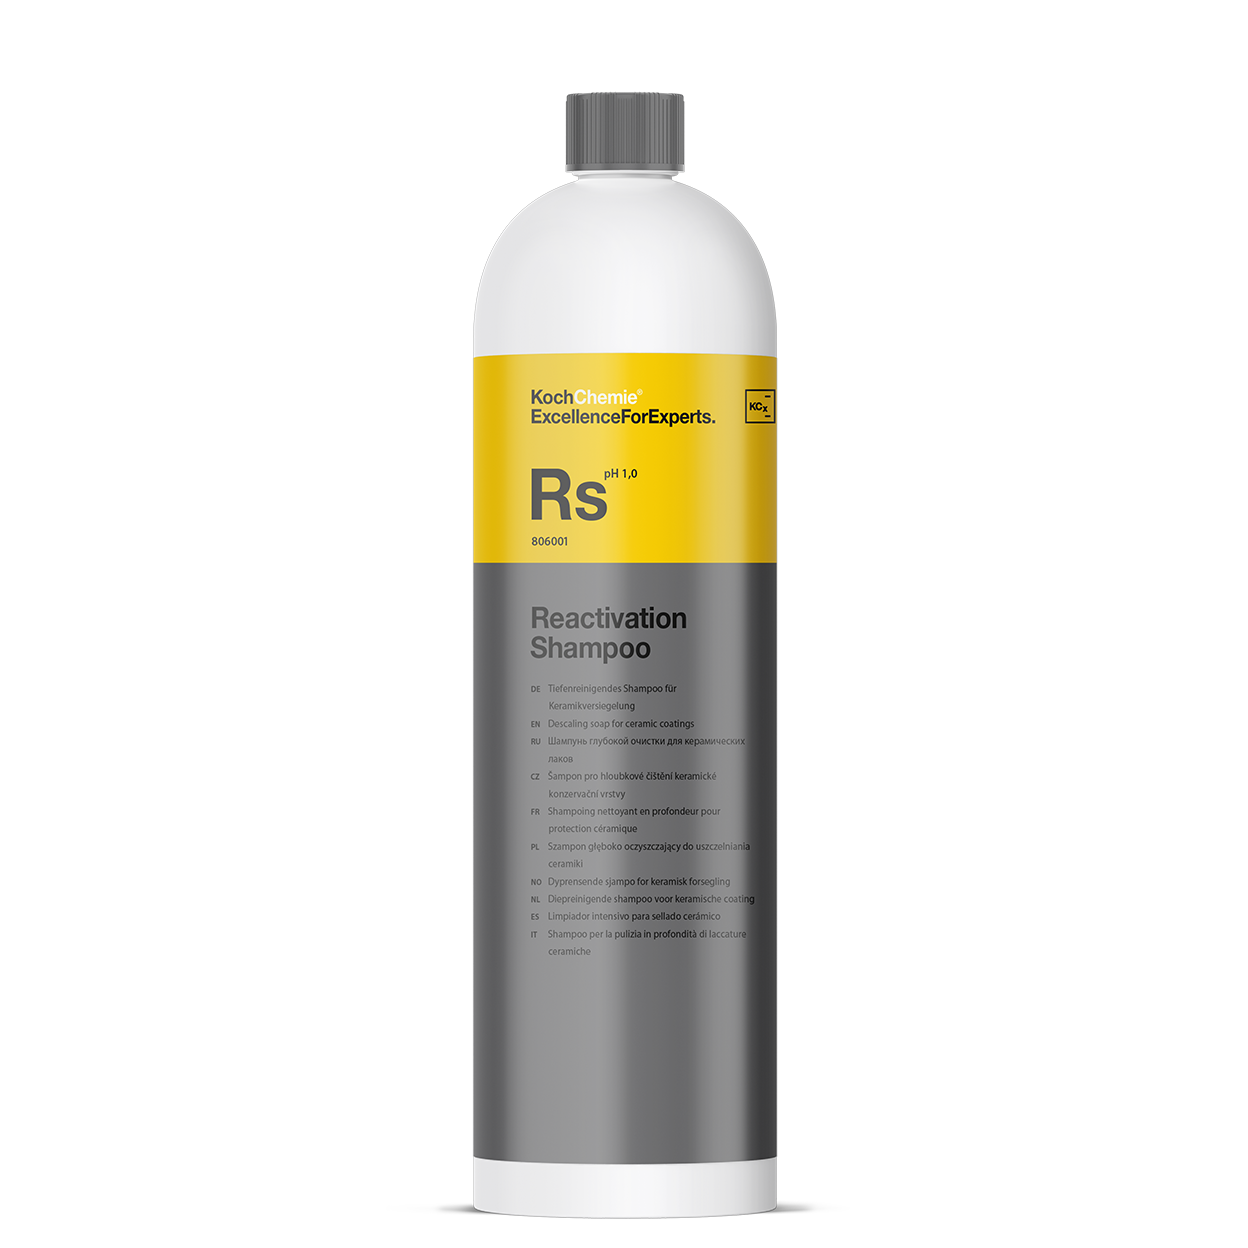 Reaktiveringsschampo - Koch-Chemie Reactivation Shampoo, 1L